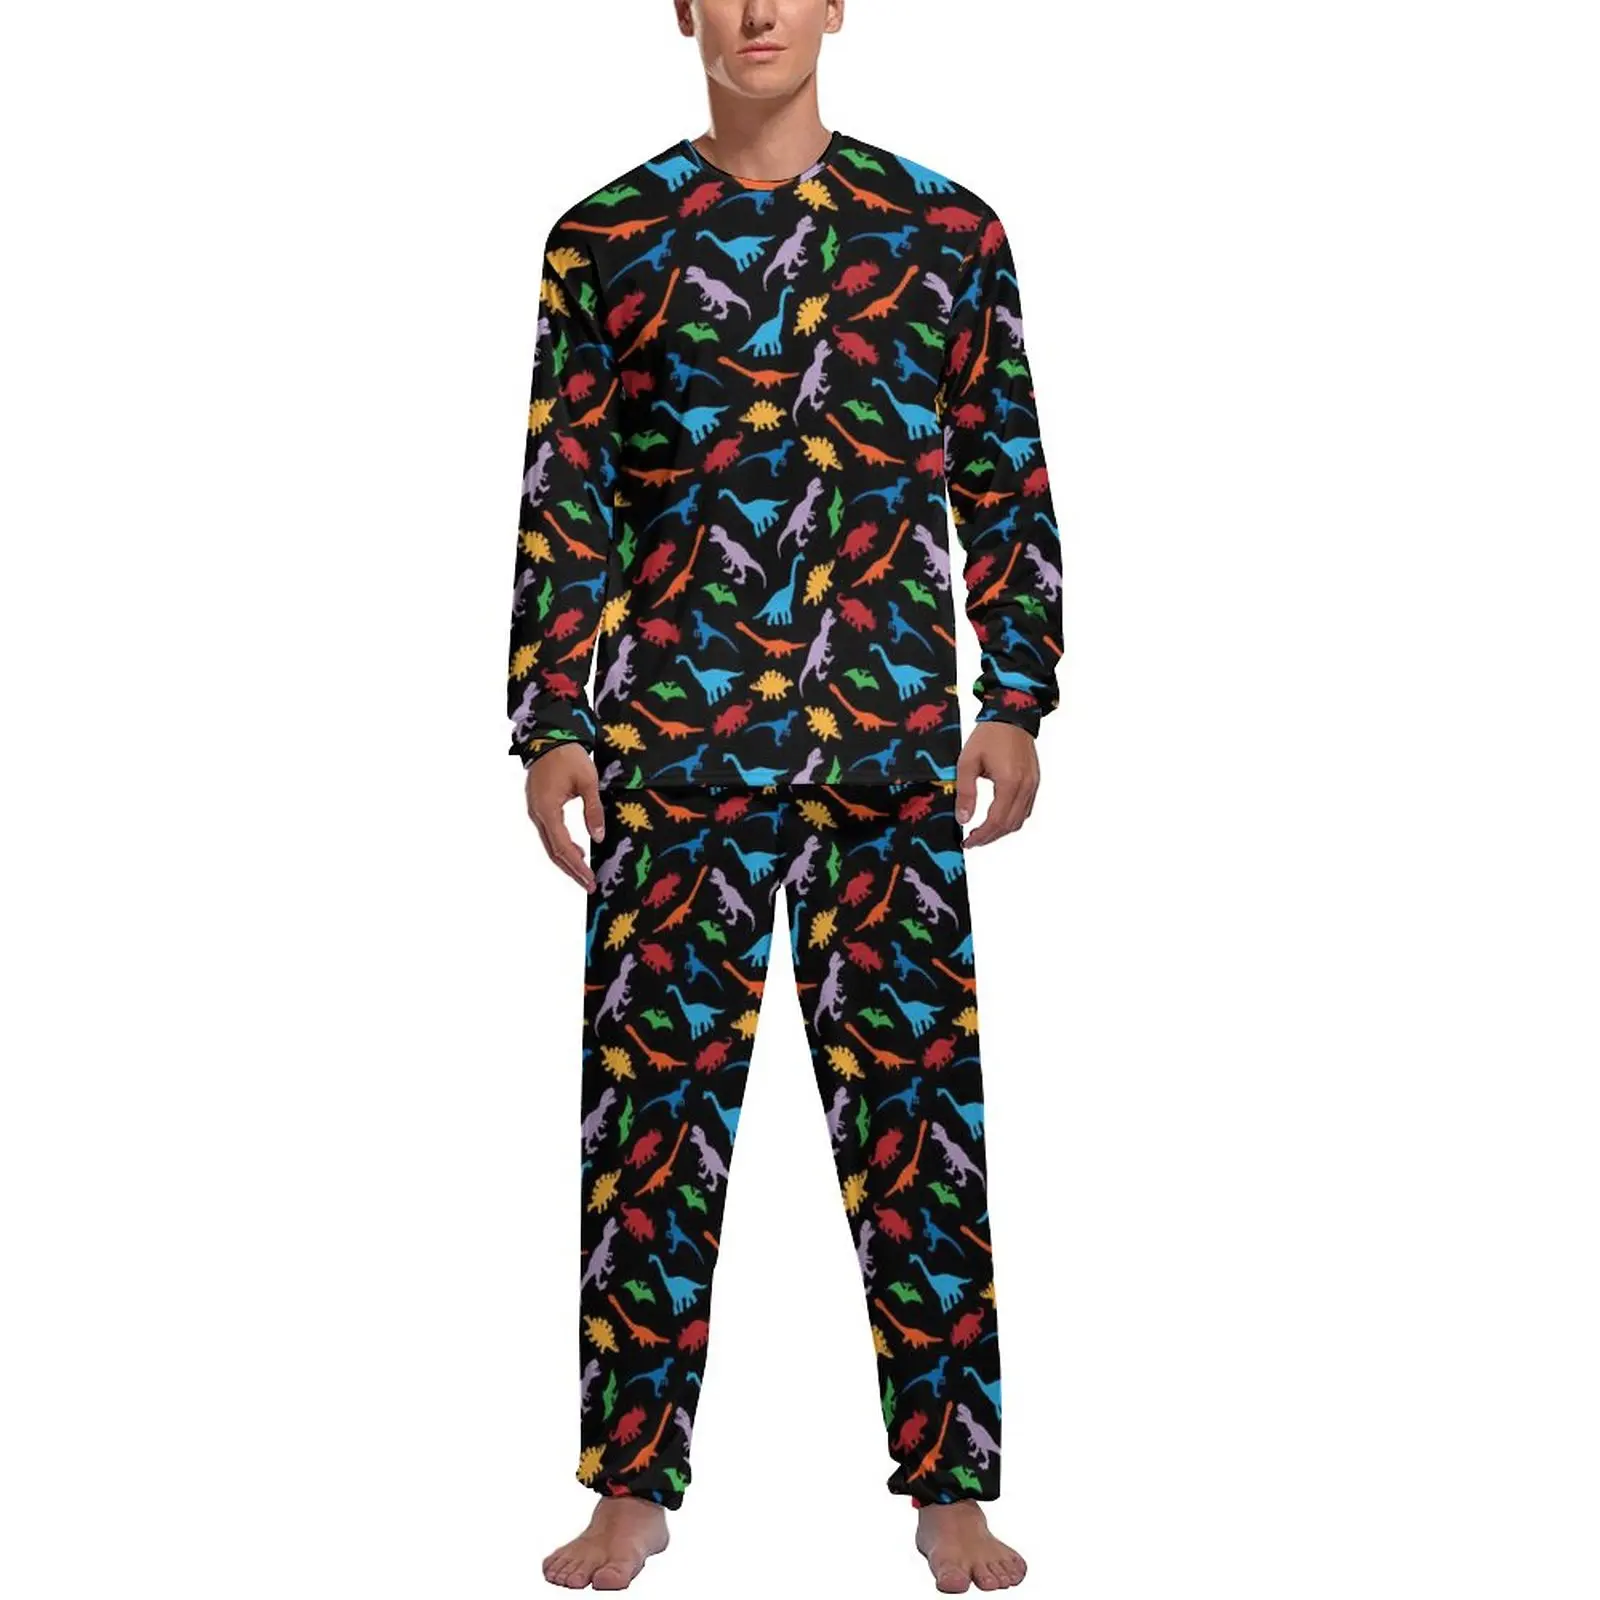 

Dinosaur Silhouette Pajamas Male Colorful Animal Kawaii Home Suit Spring Long Sleeves 2 Pieces Casual Pattern Pajama Sets